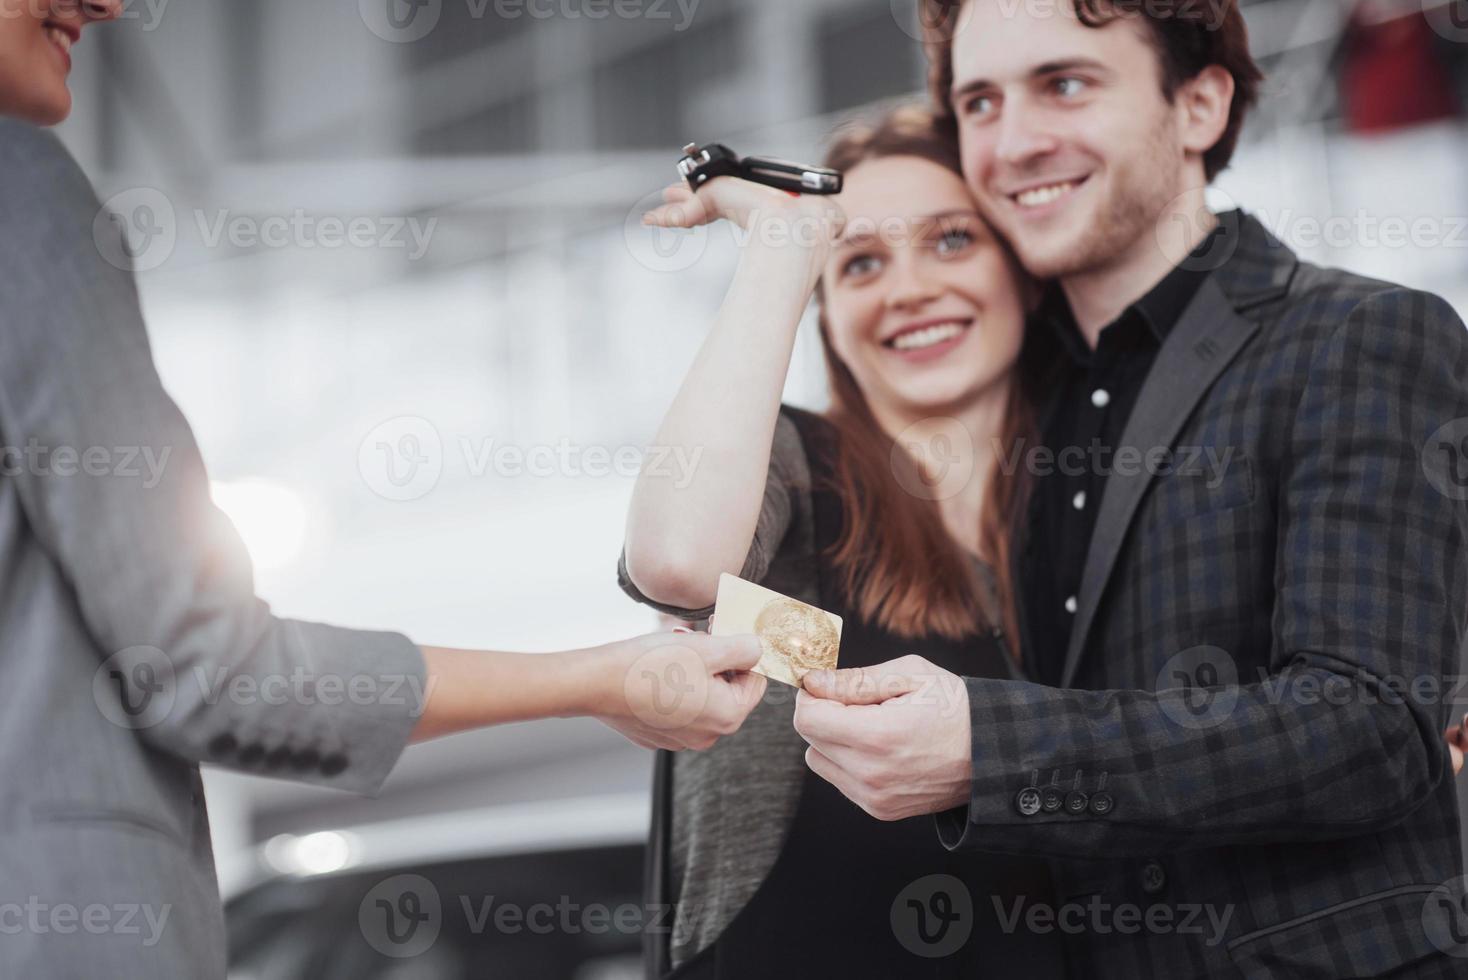 orgogliosi proprietari. bella giovane coppia felice che si abbraccia in piedi vicino alla loro auto appena acquistata sorridendo con gioia mostrando le chiavi della macchina alla fotocamera copyspace famiglia amore relazione stile di vita acquisto consumismo foto